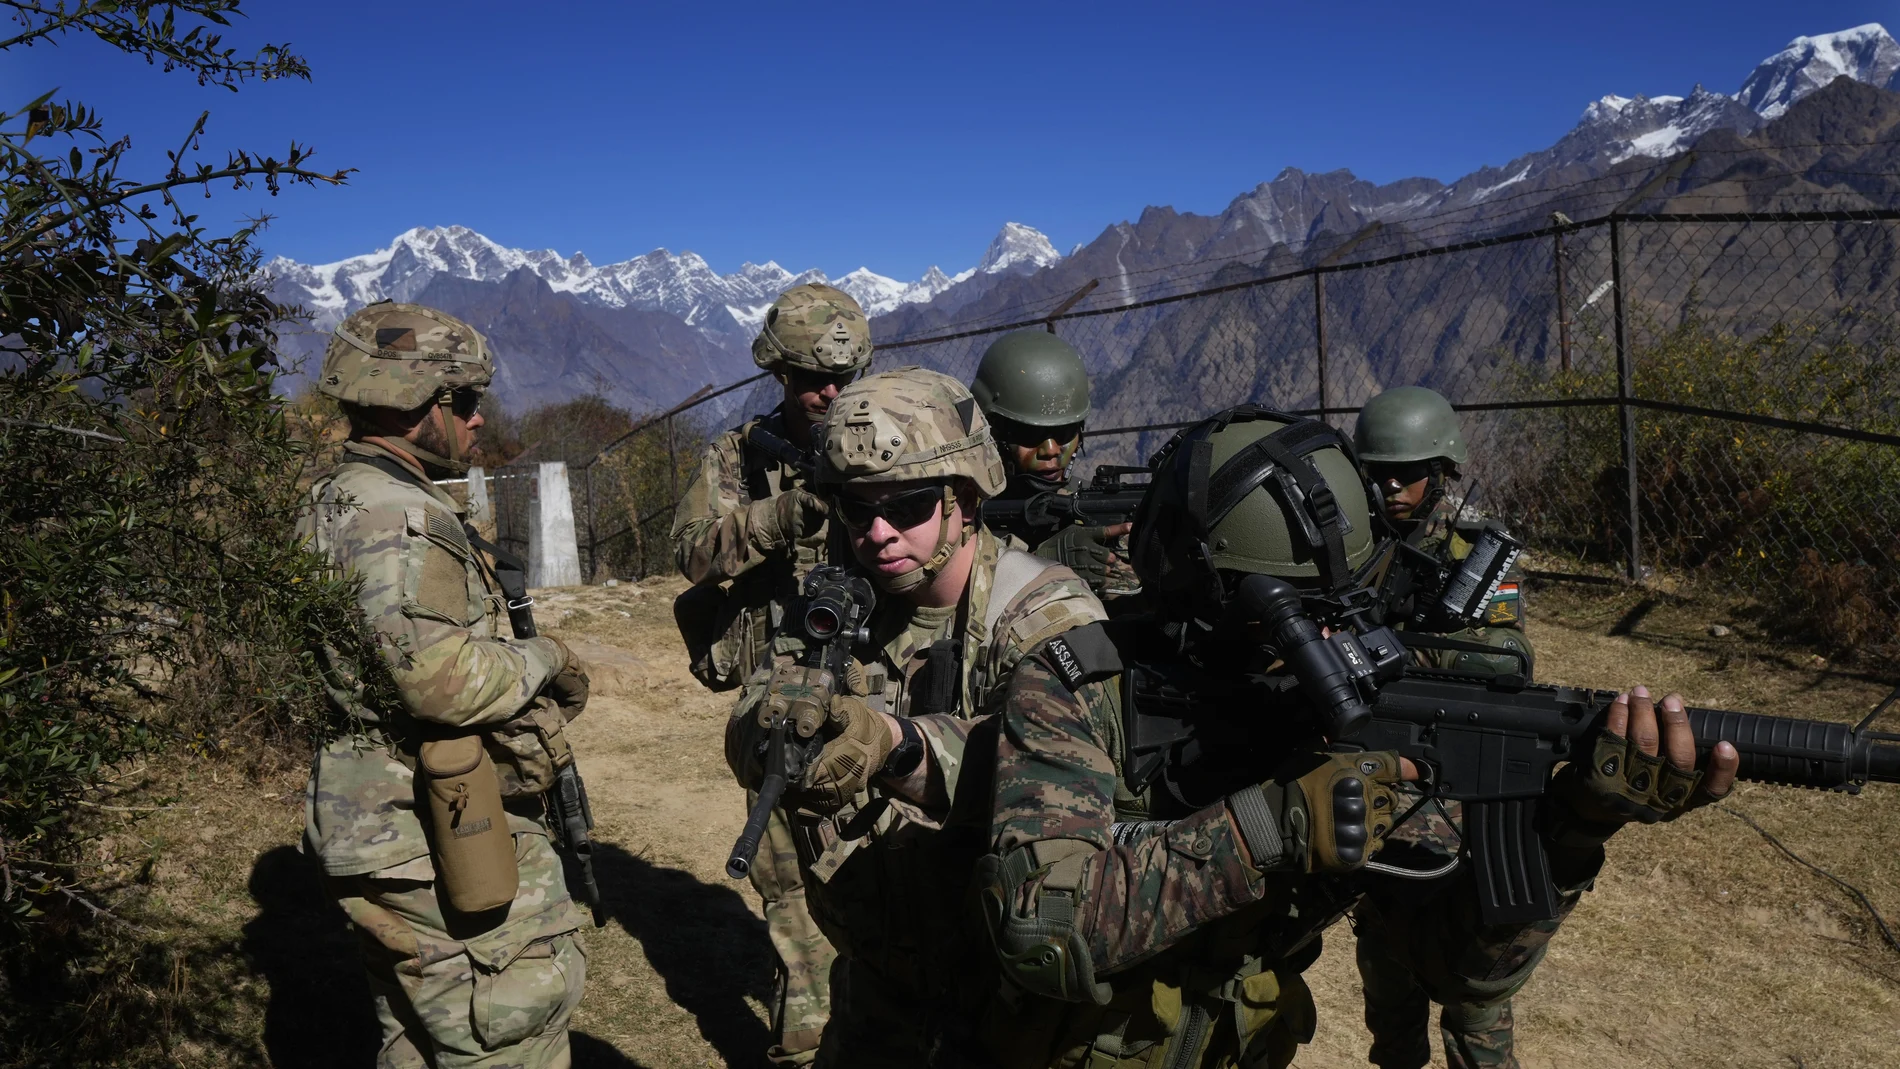 Soldados del ejército estadounidense de la 2ª Brigada de la 11ª División Aerotransportada con soldados del ejército indio participan en un ejercicio de tiro al blanco durante el entrenamiento conjunto indo-estadounidense denominado Yudh Abhyas, en Auli, en el estado indio de Uttarakhand